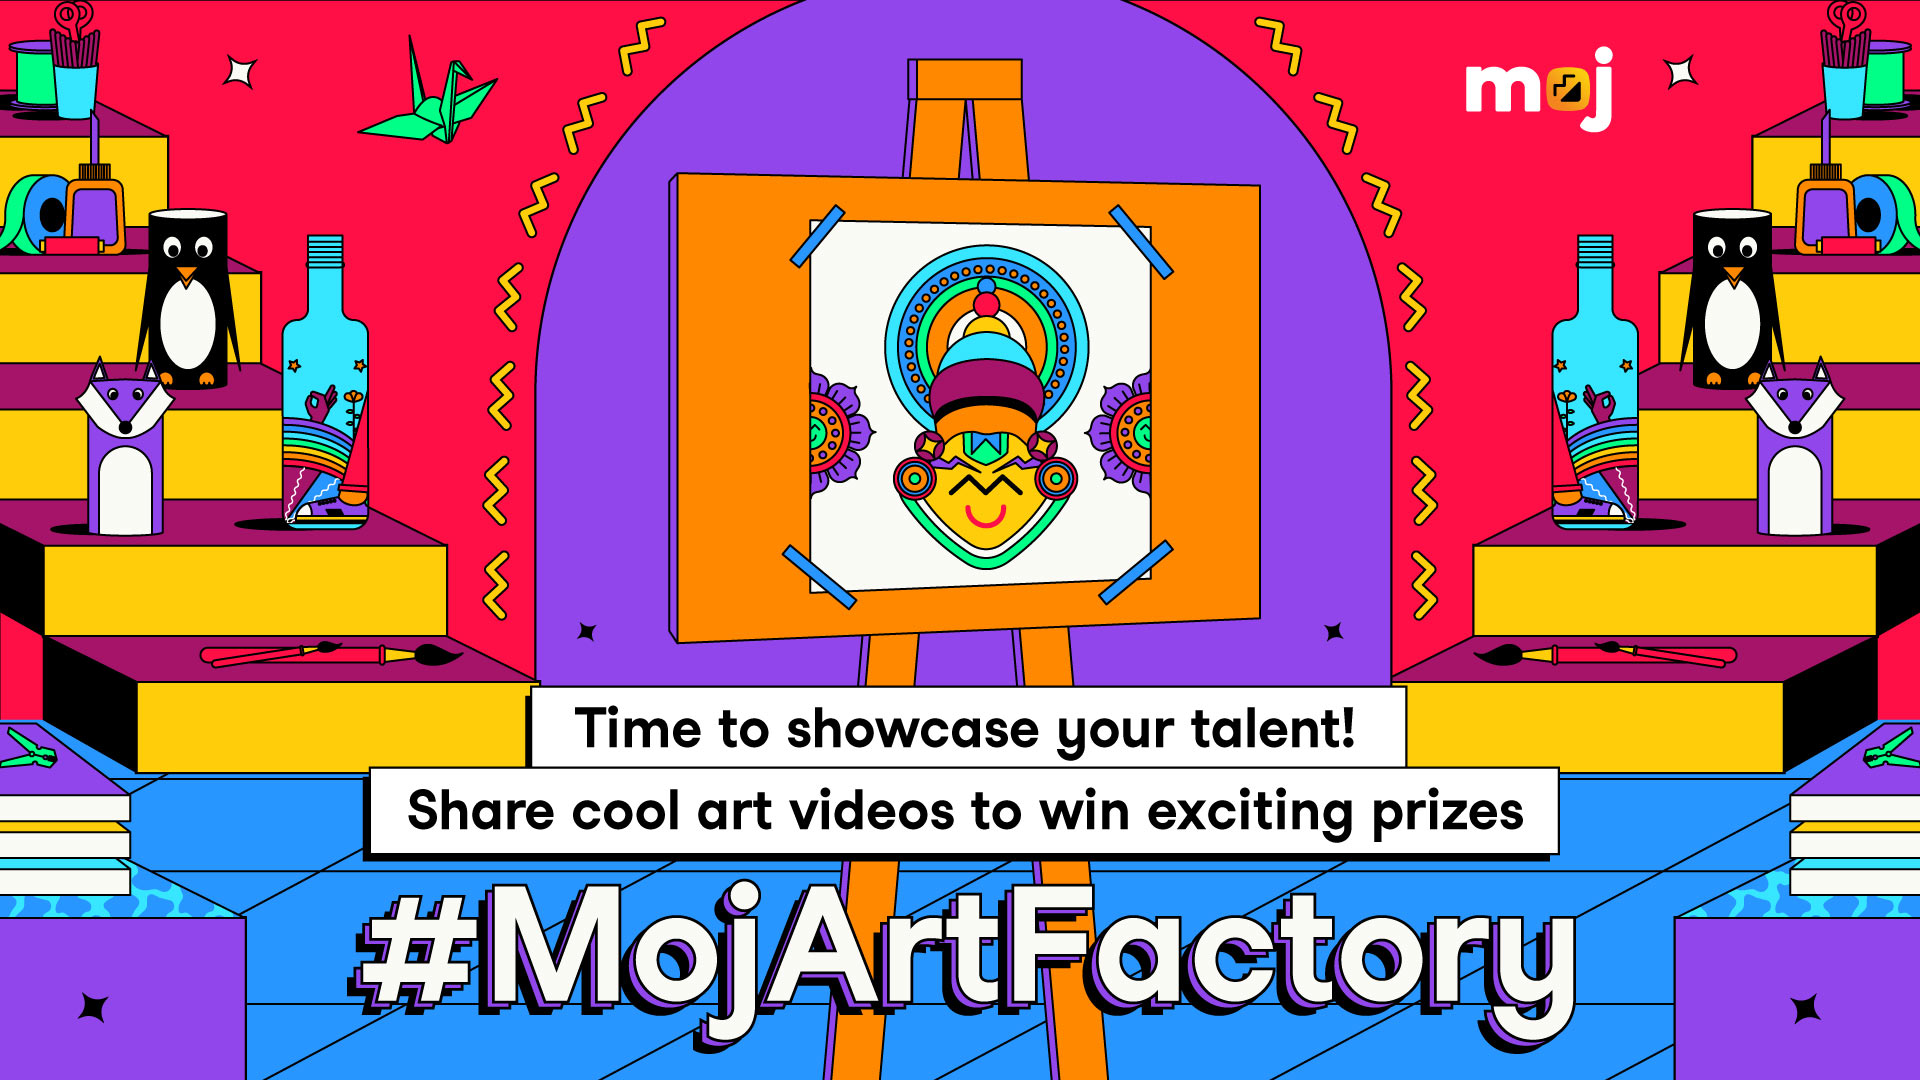 Moj launches #MojArtFactory – the biggest art festival